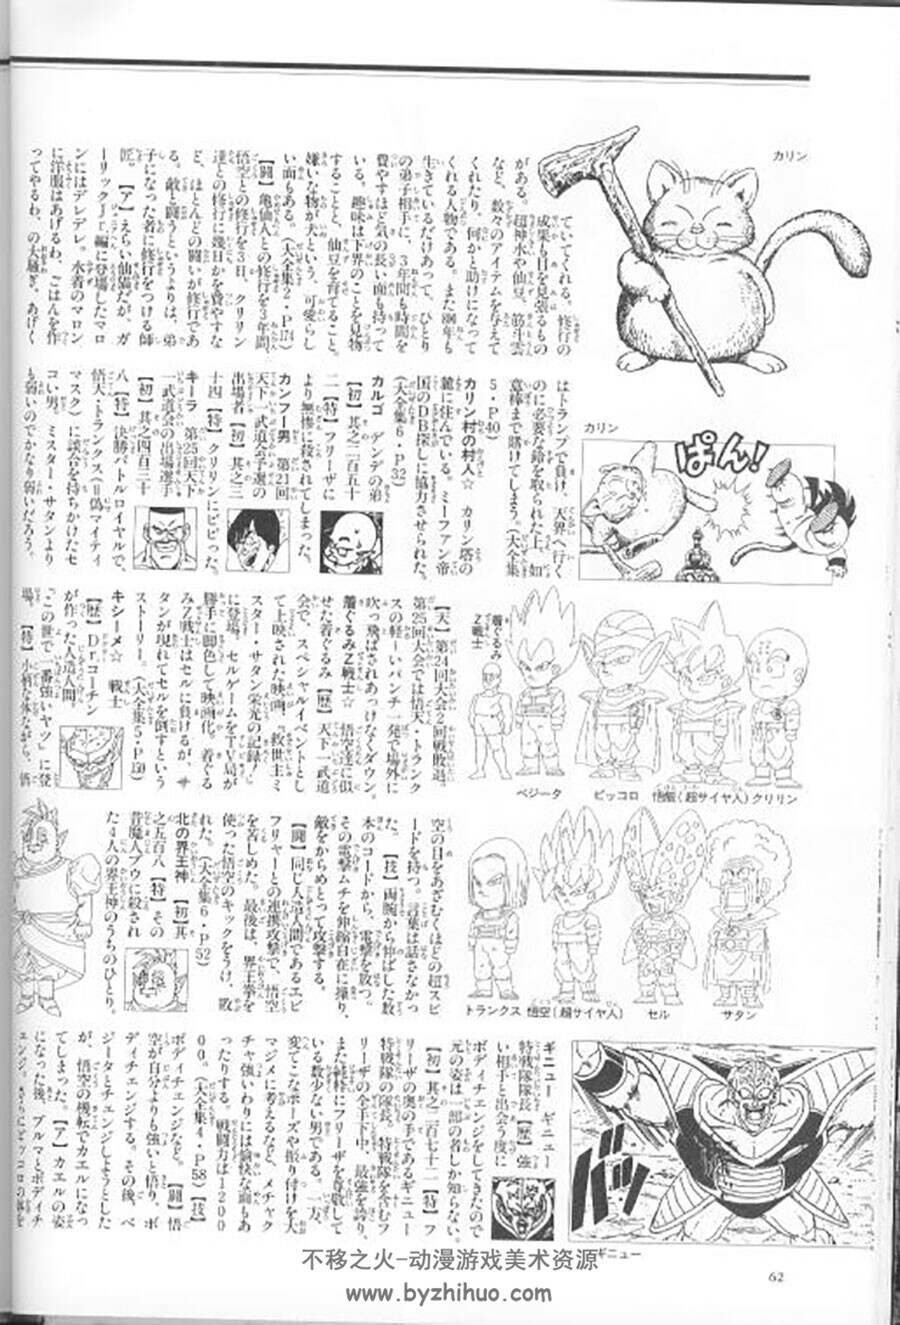 DRAGON BALL 大事典 鸟山明 龙珠漫画资料集